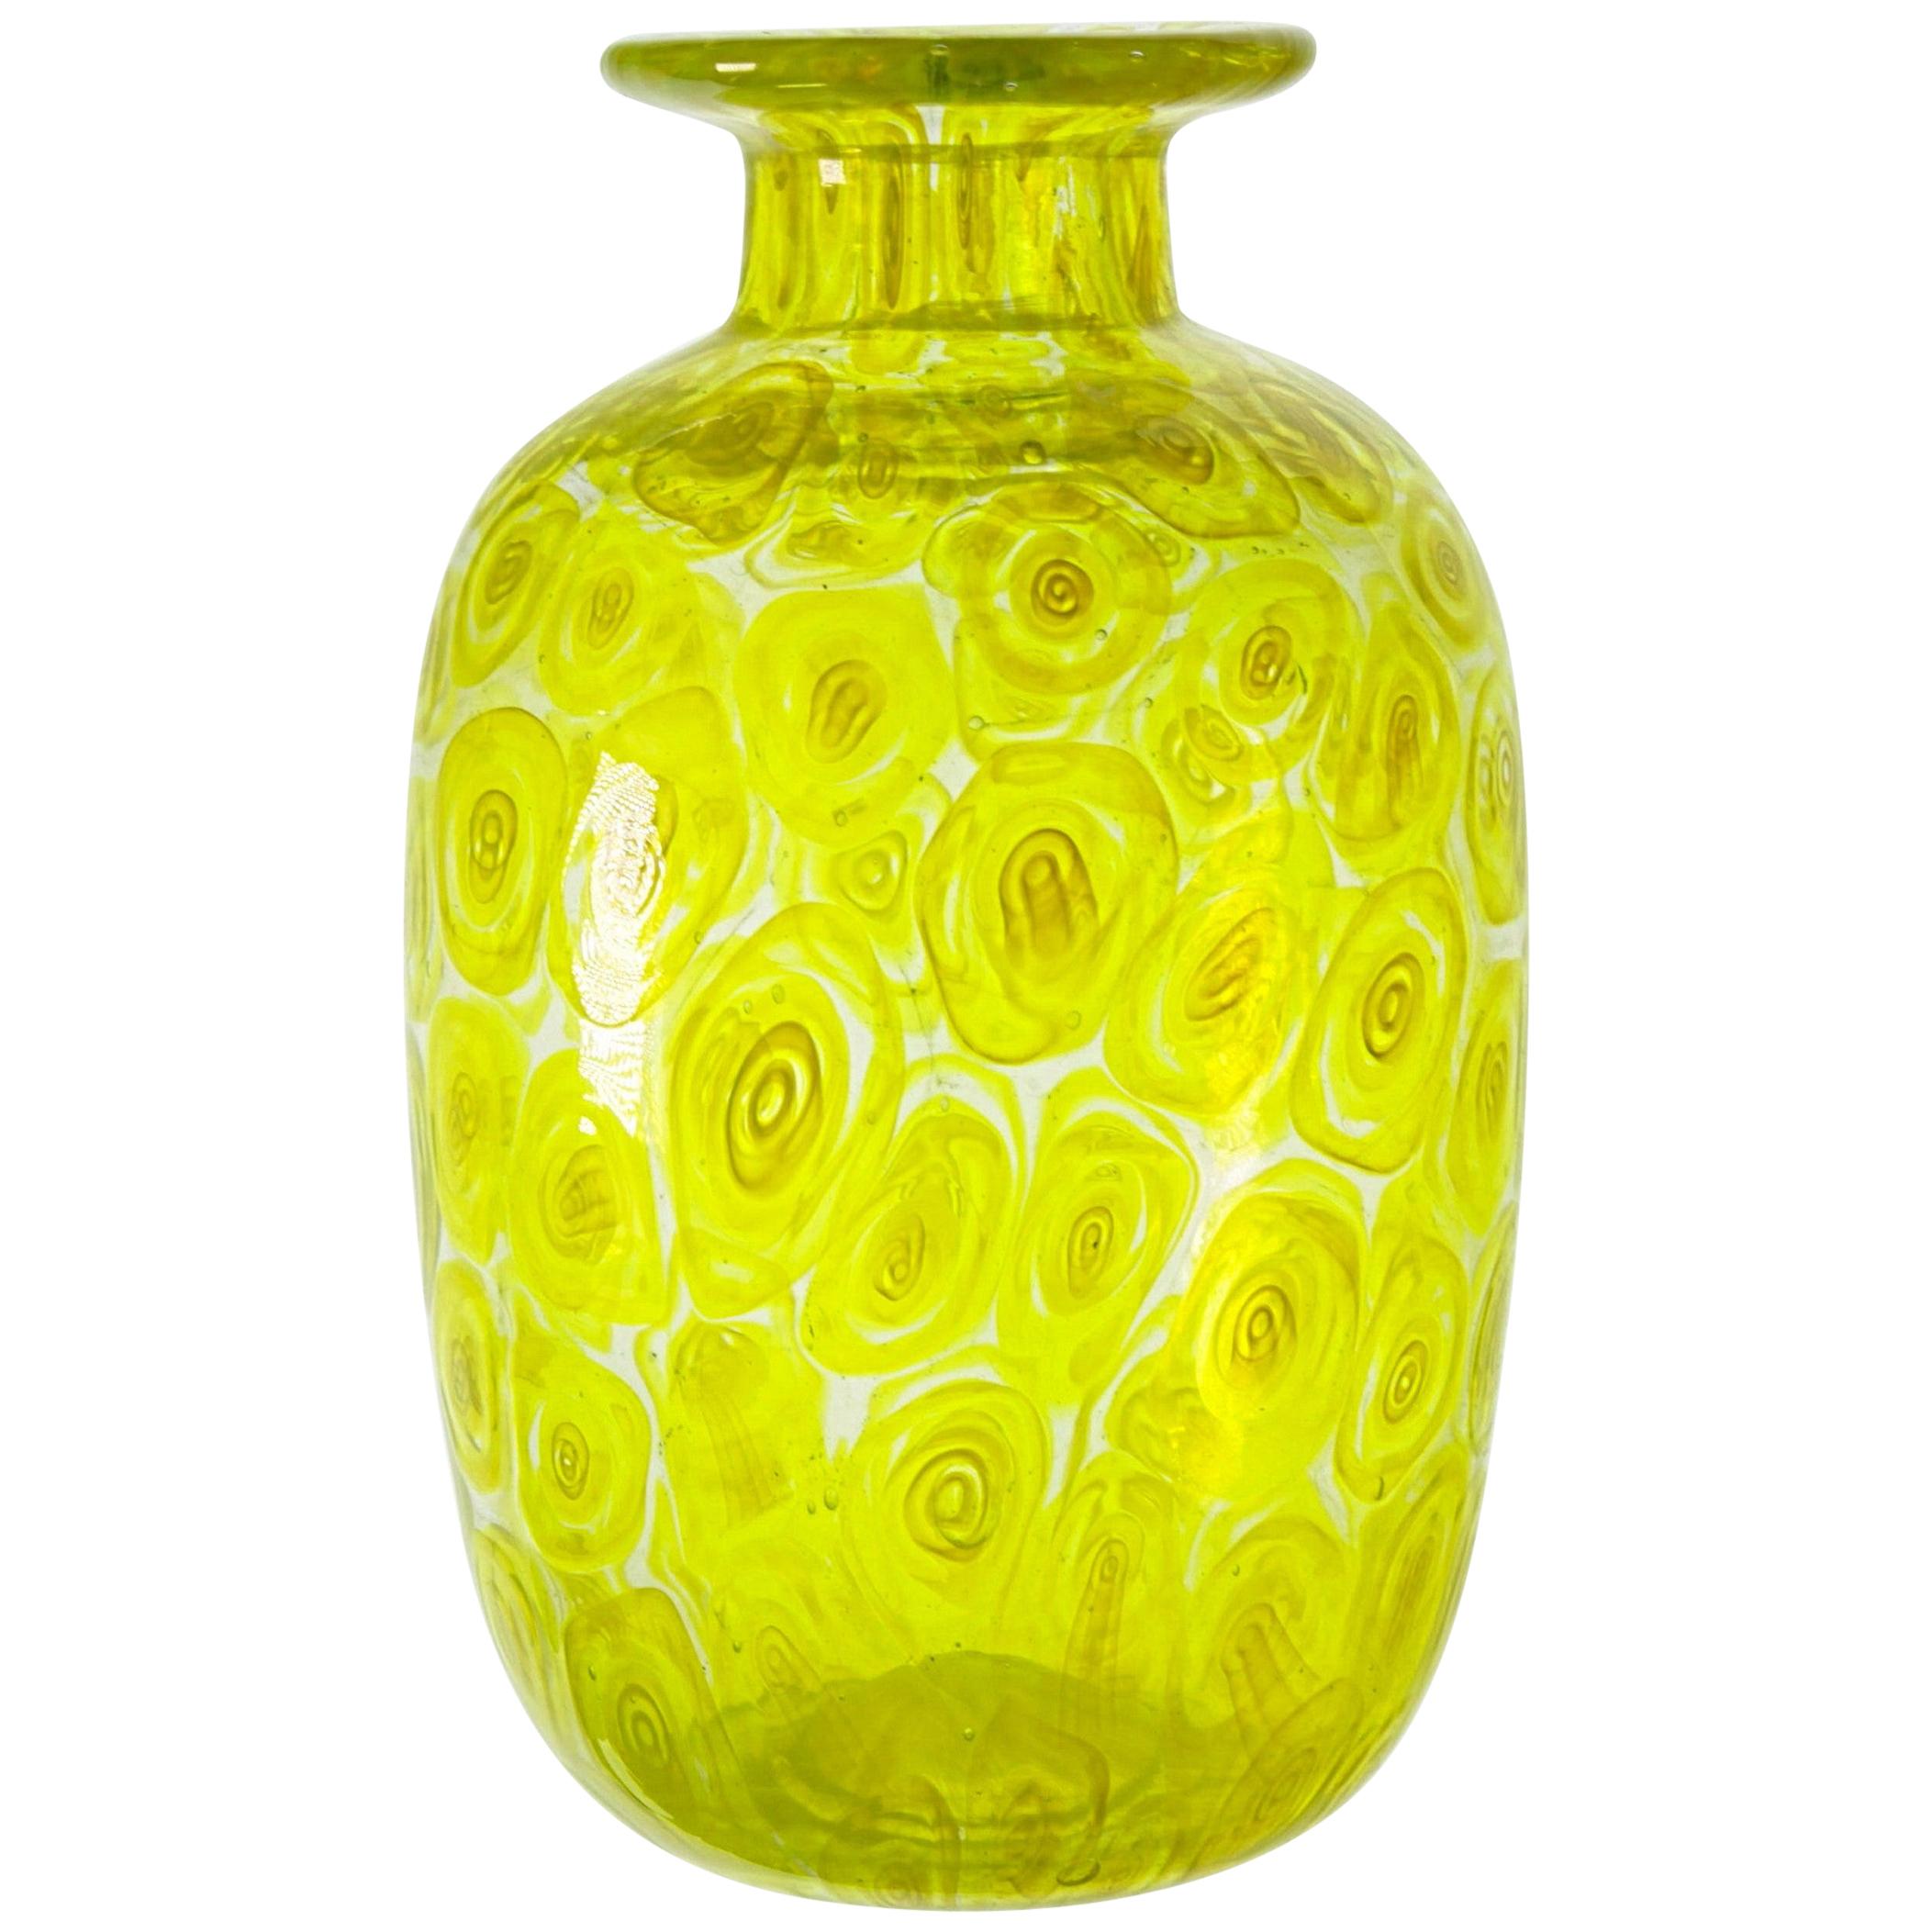 Cenedese Unique Uranium Yellow Murrina Vase, 1960s or Sooner